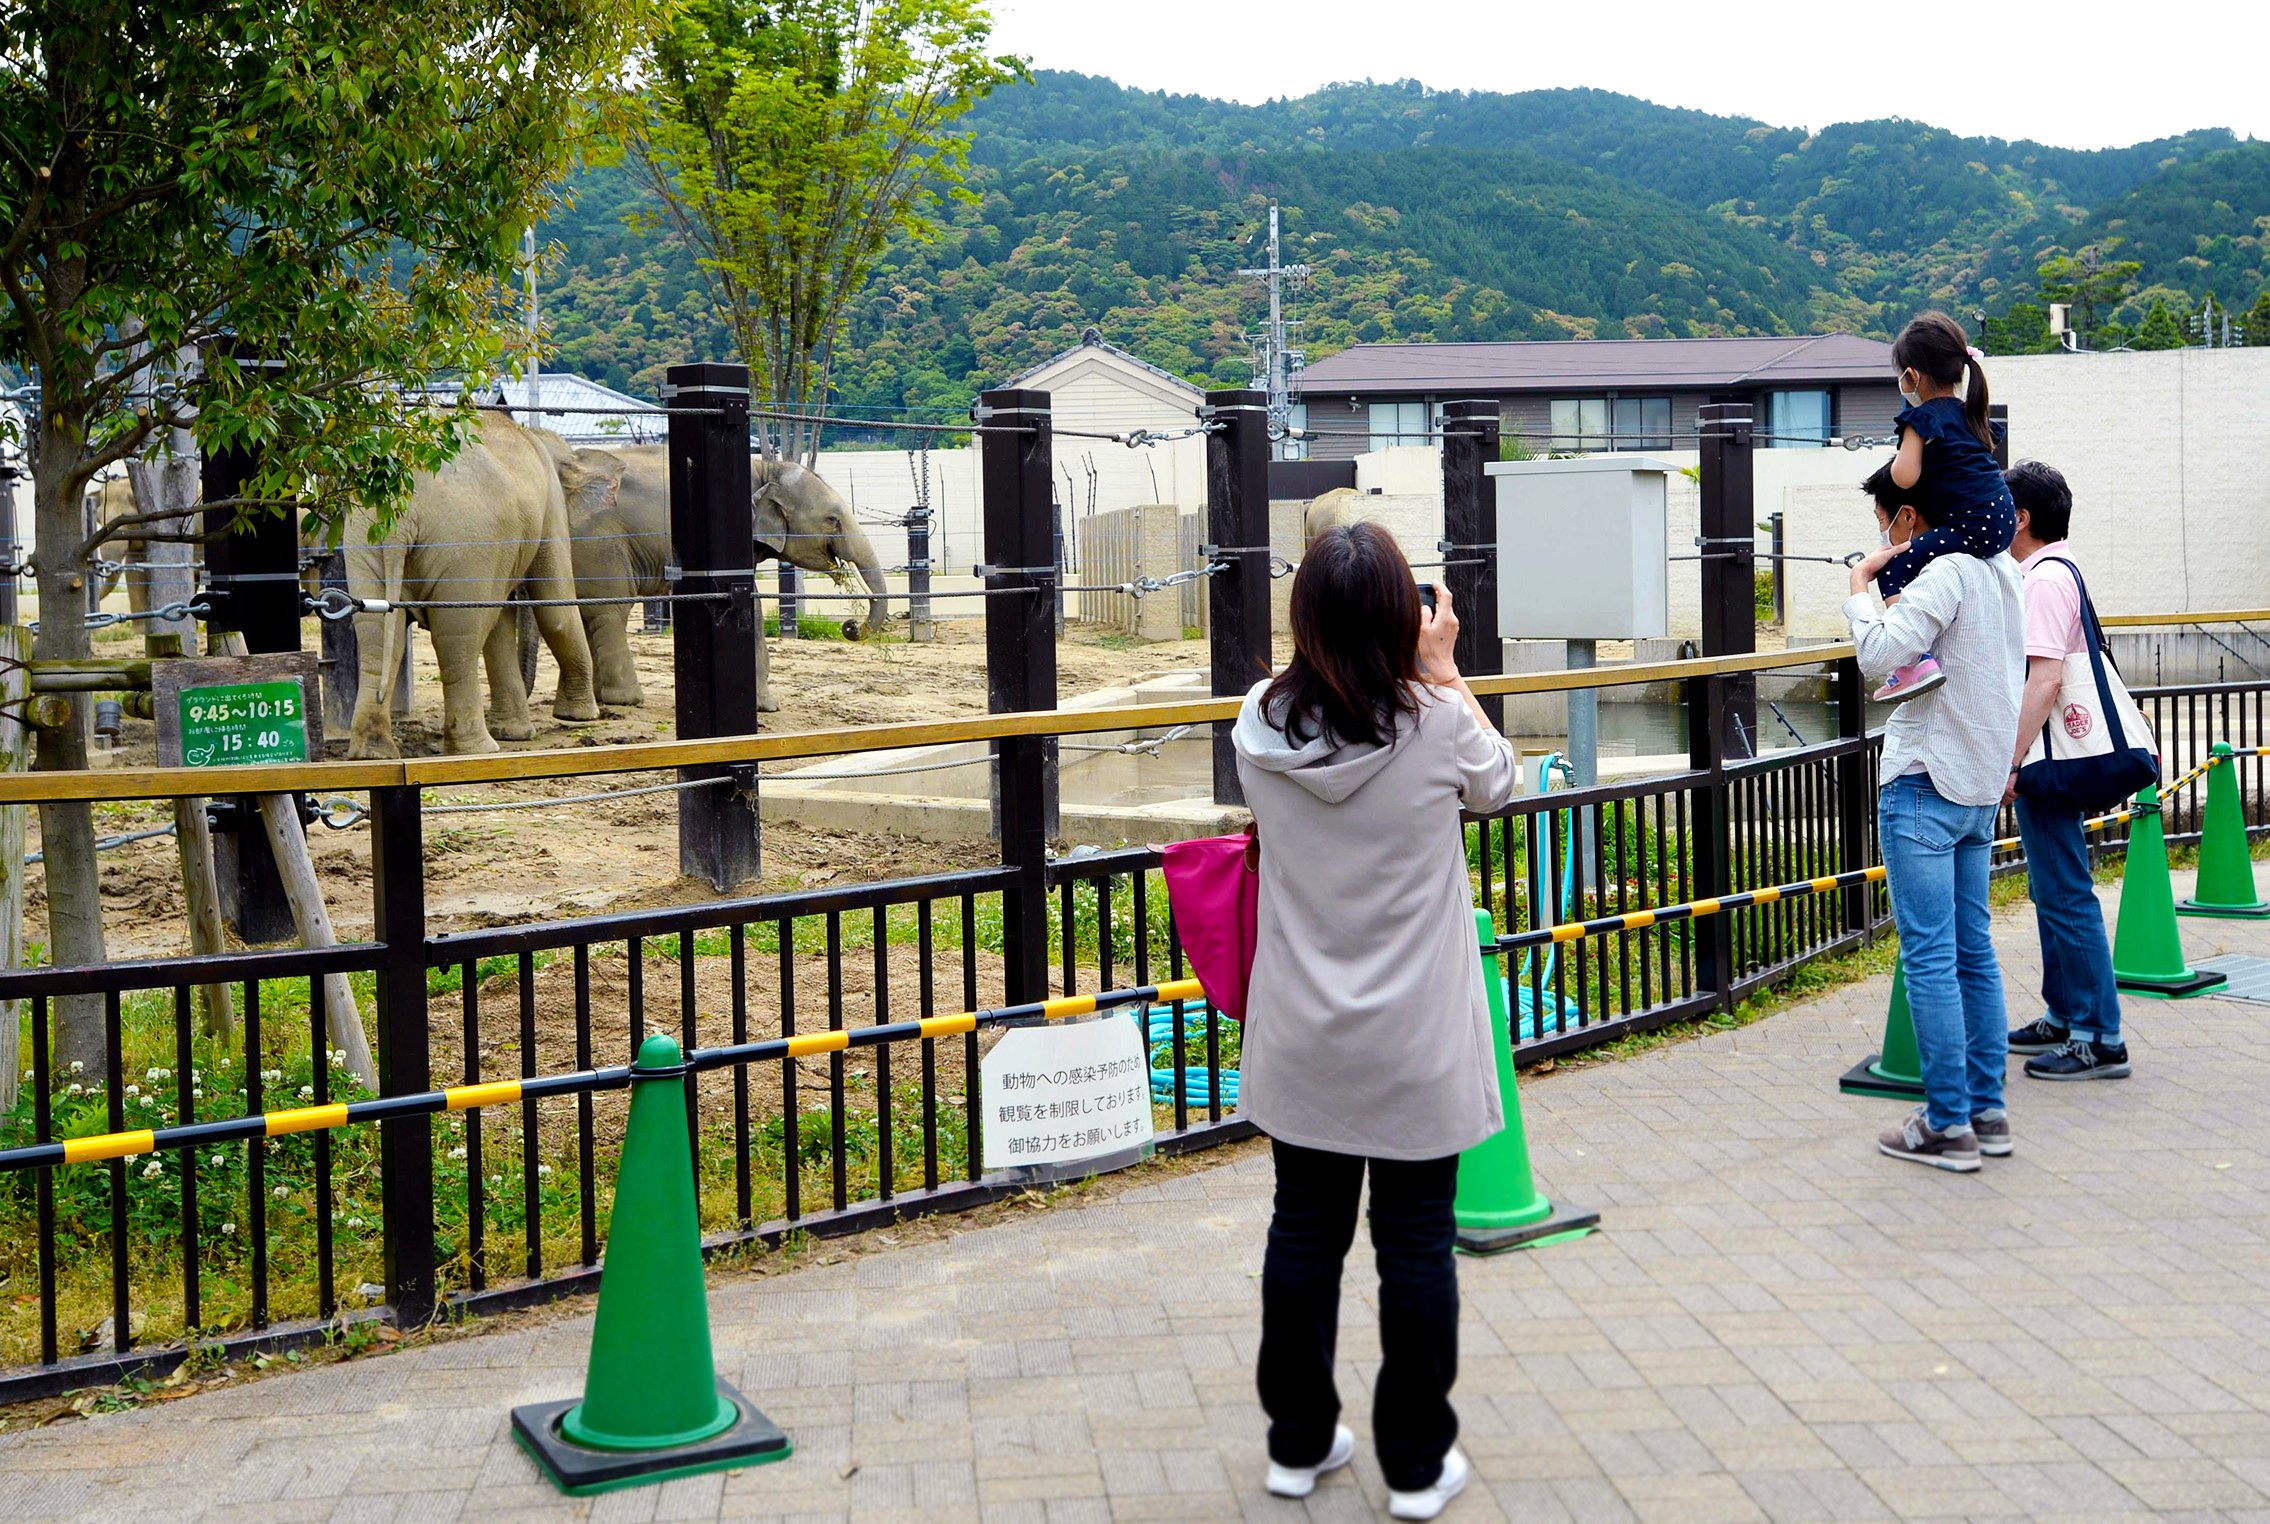 感染防止へ動物と距離、でも「うれしい」　動植物園に久々歓声、営業再開広がる